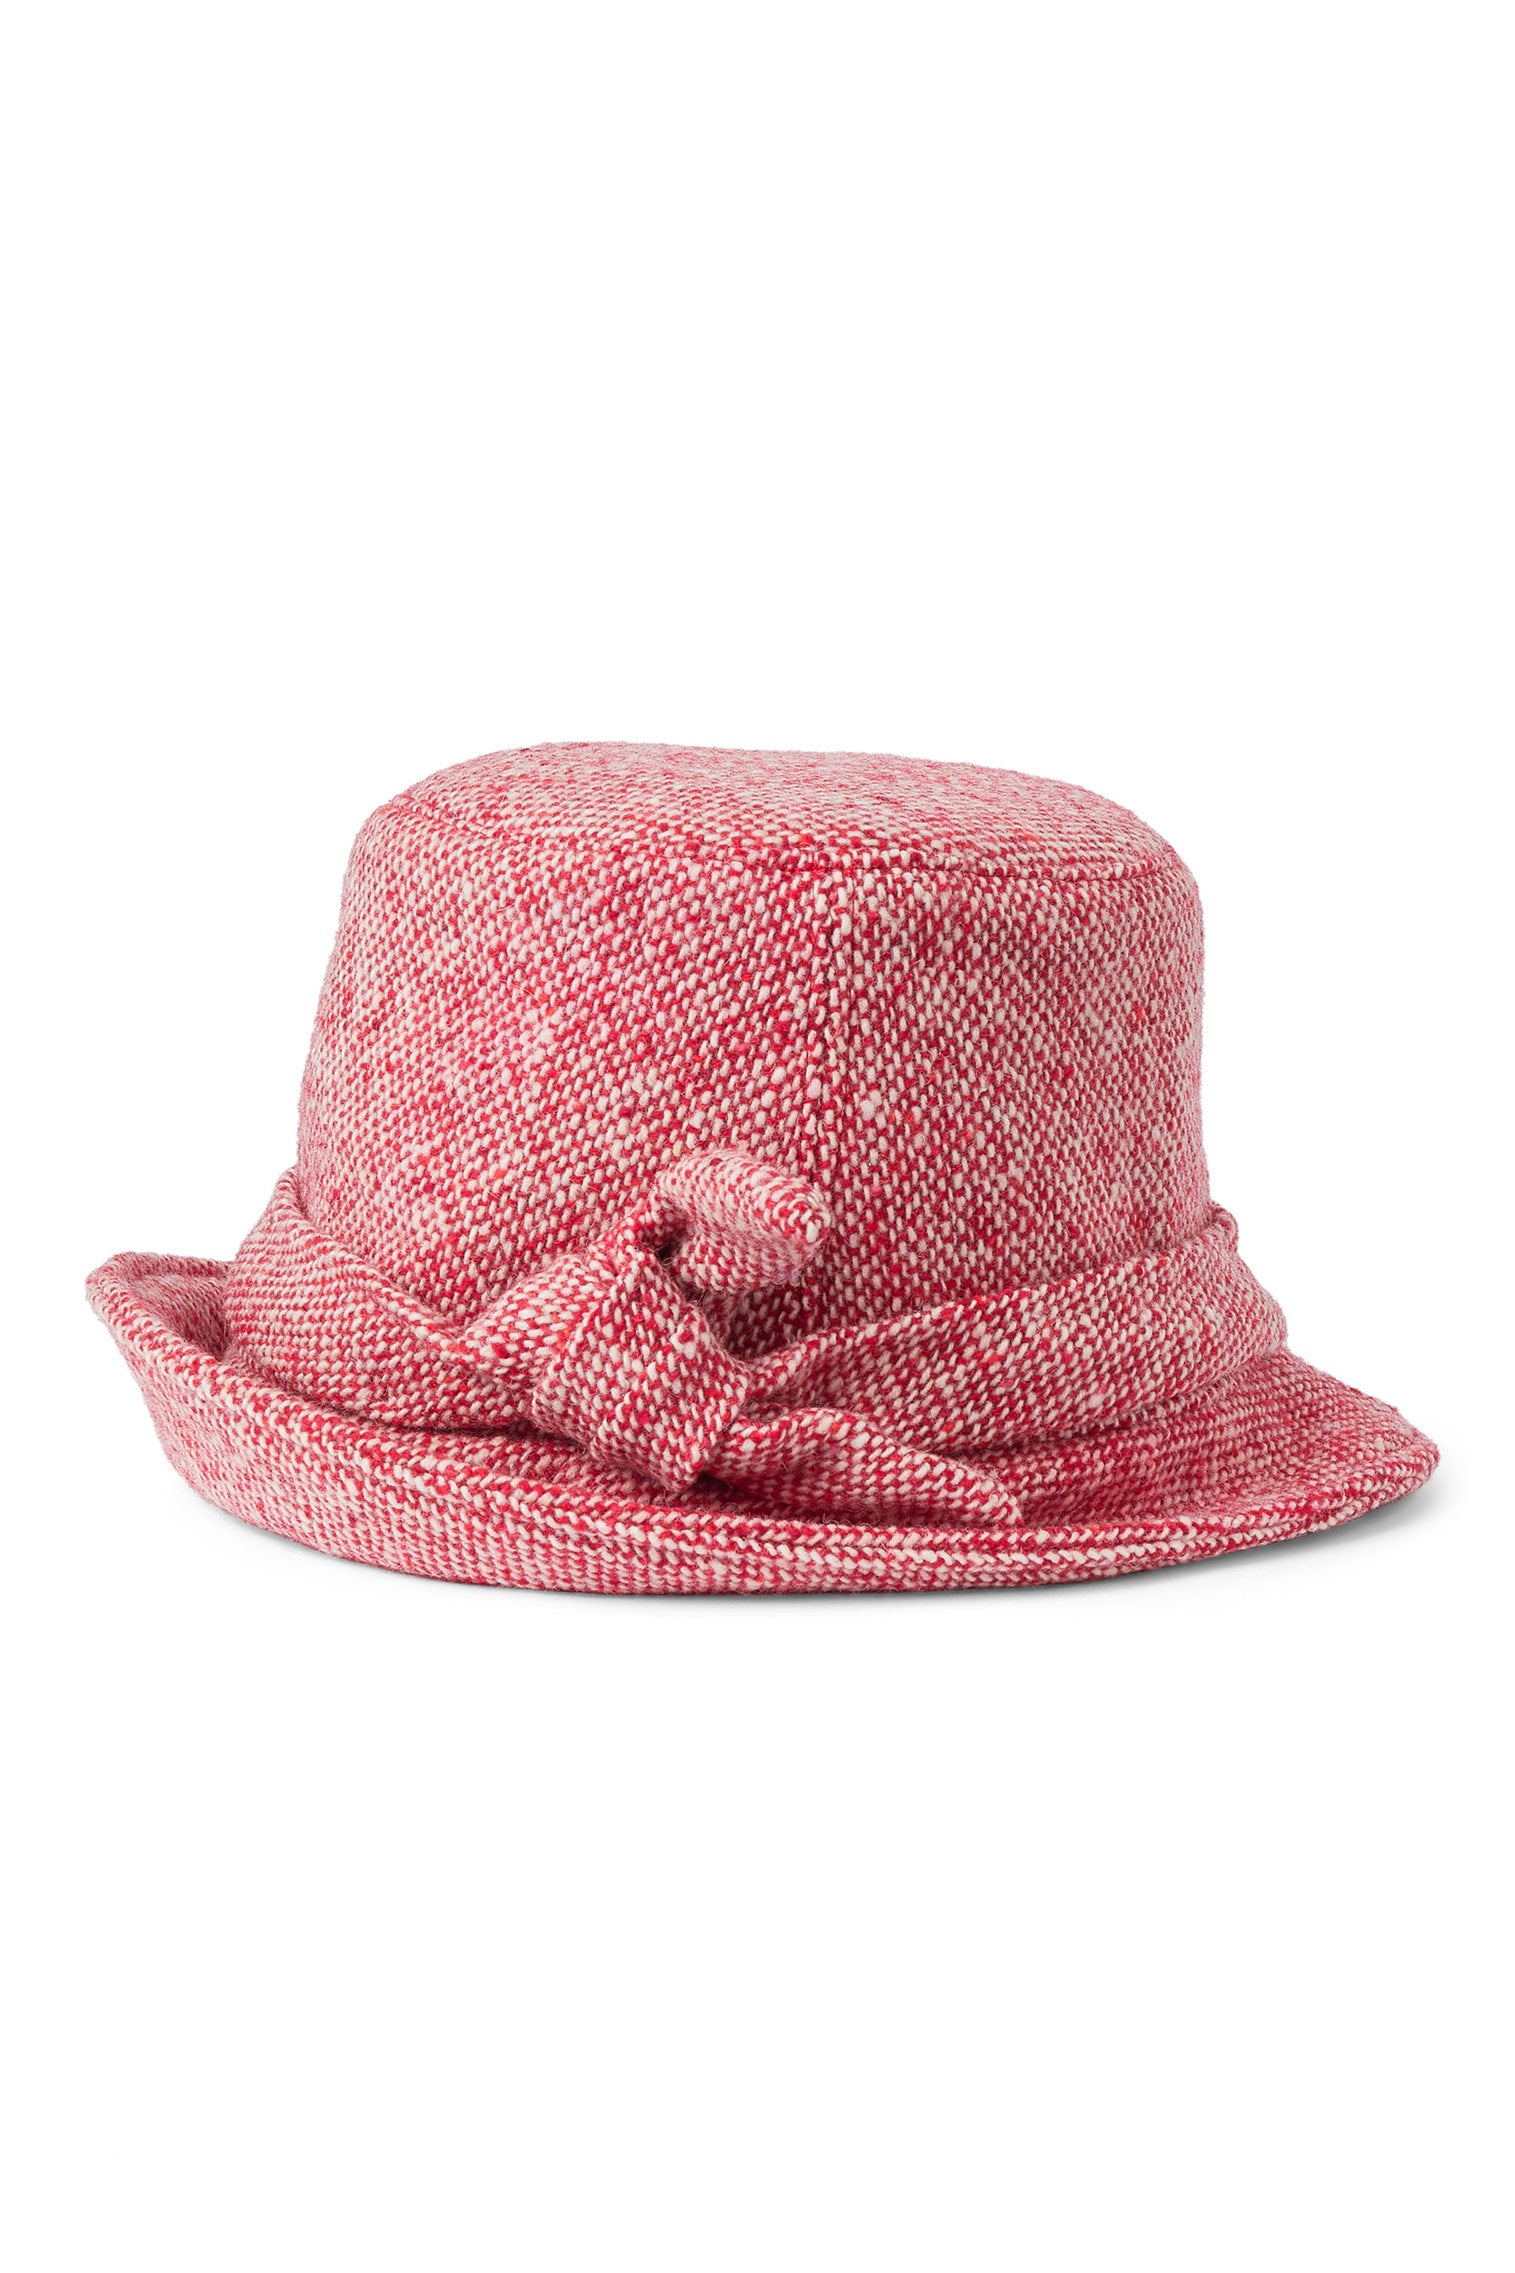 Dolores Red Cloche - New Season Women's Hats - Lock & Co. Hatters London UK